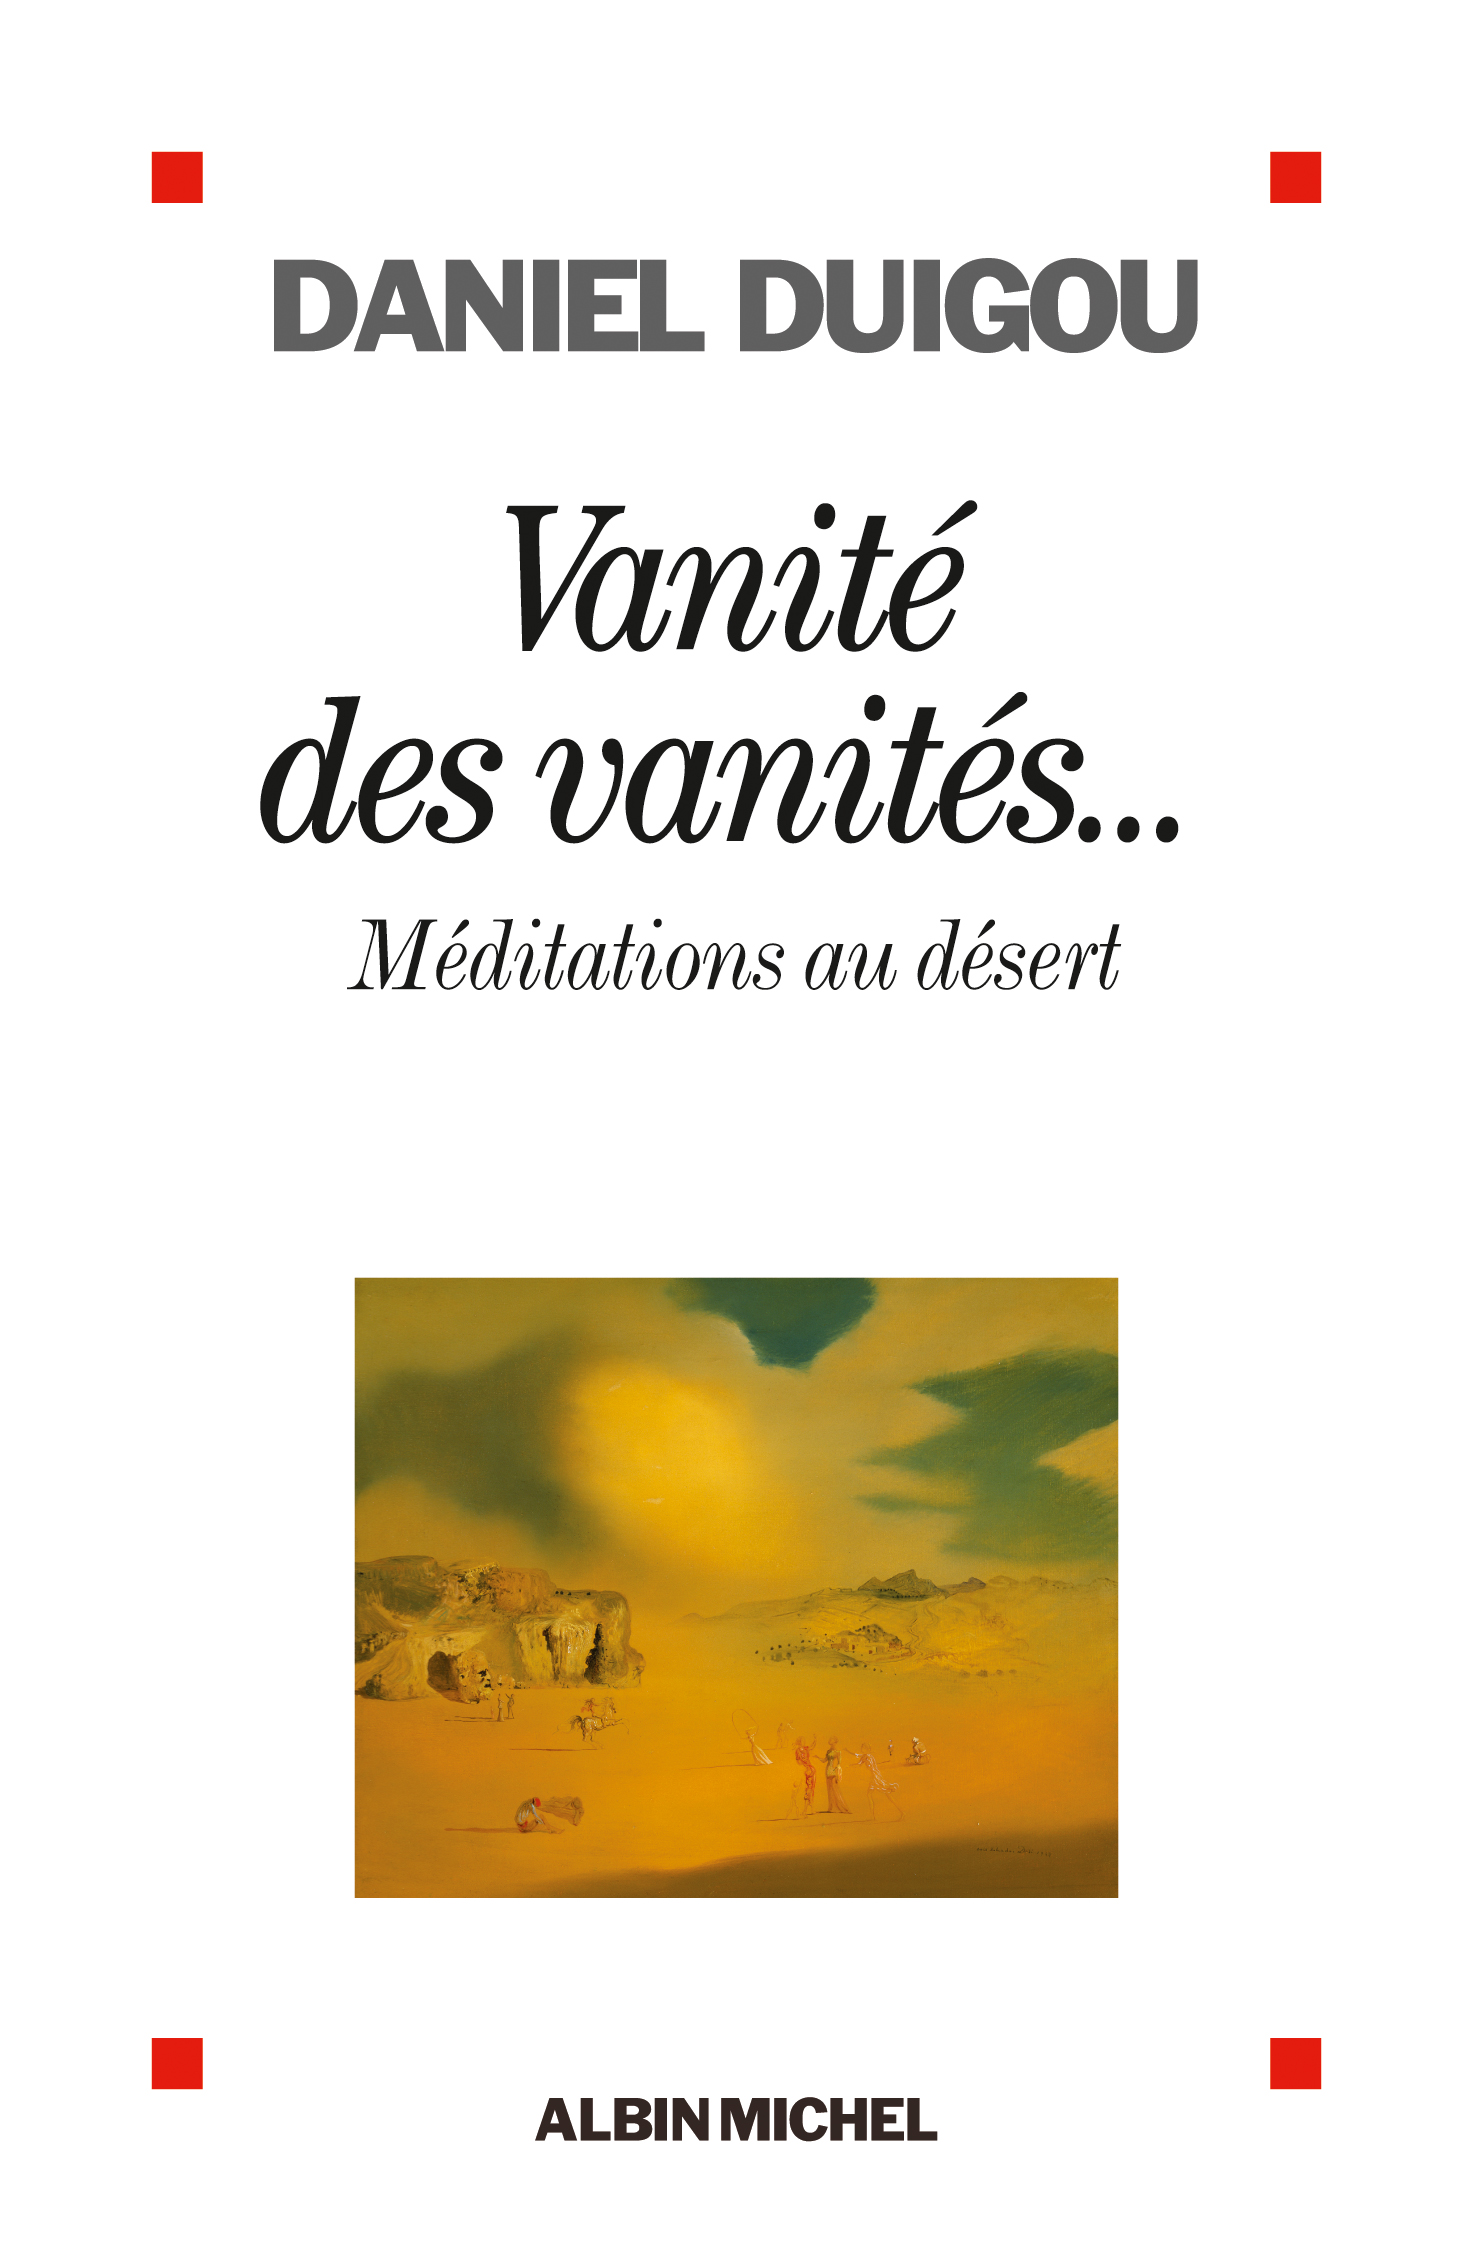 Couverture du livre Vanité des vanités...